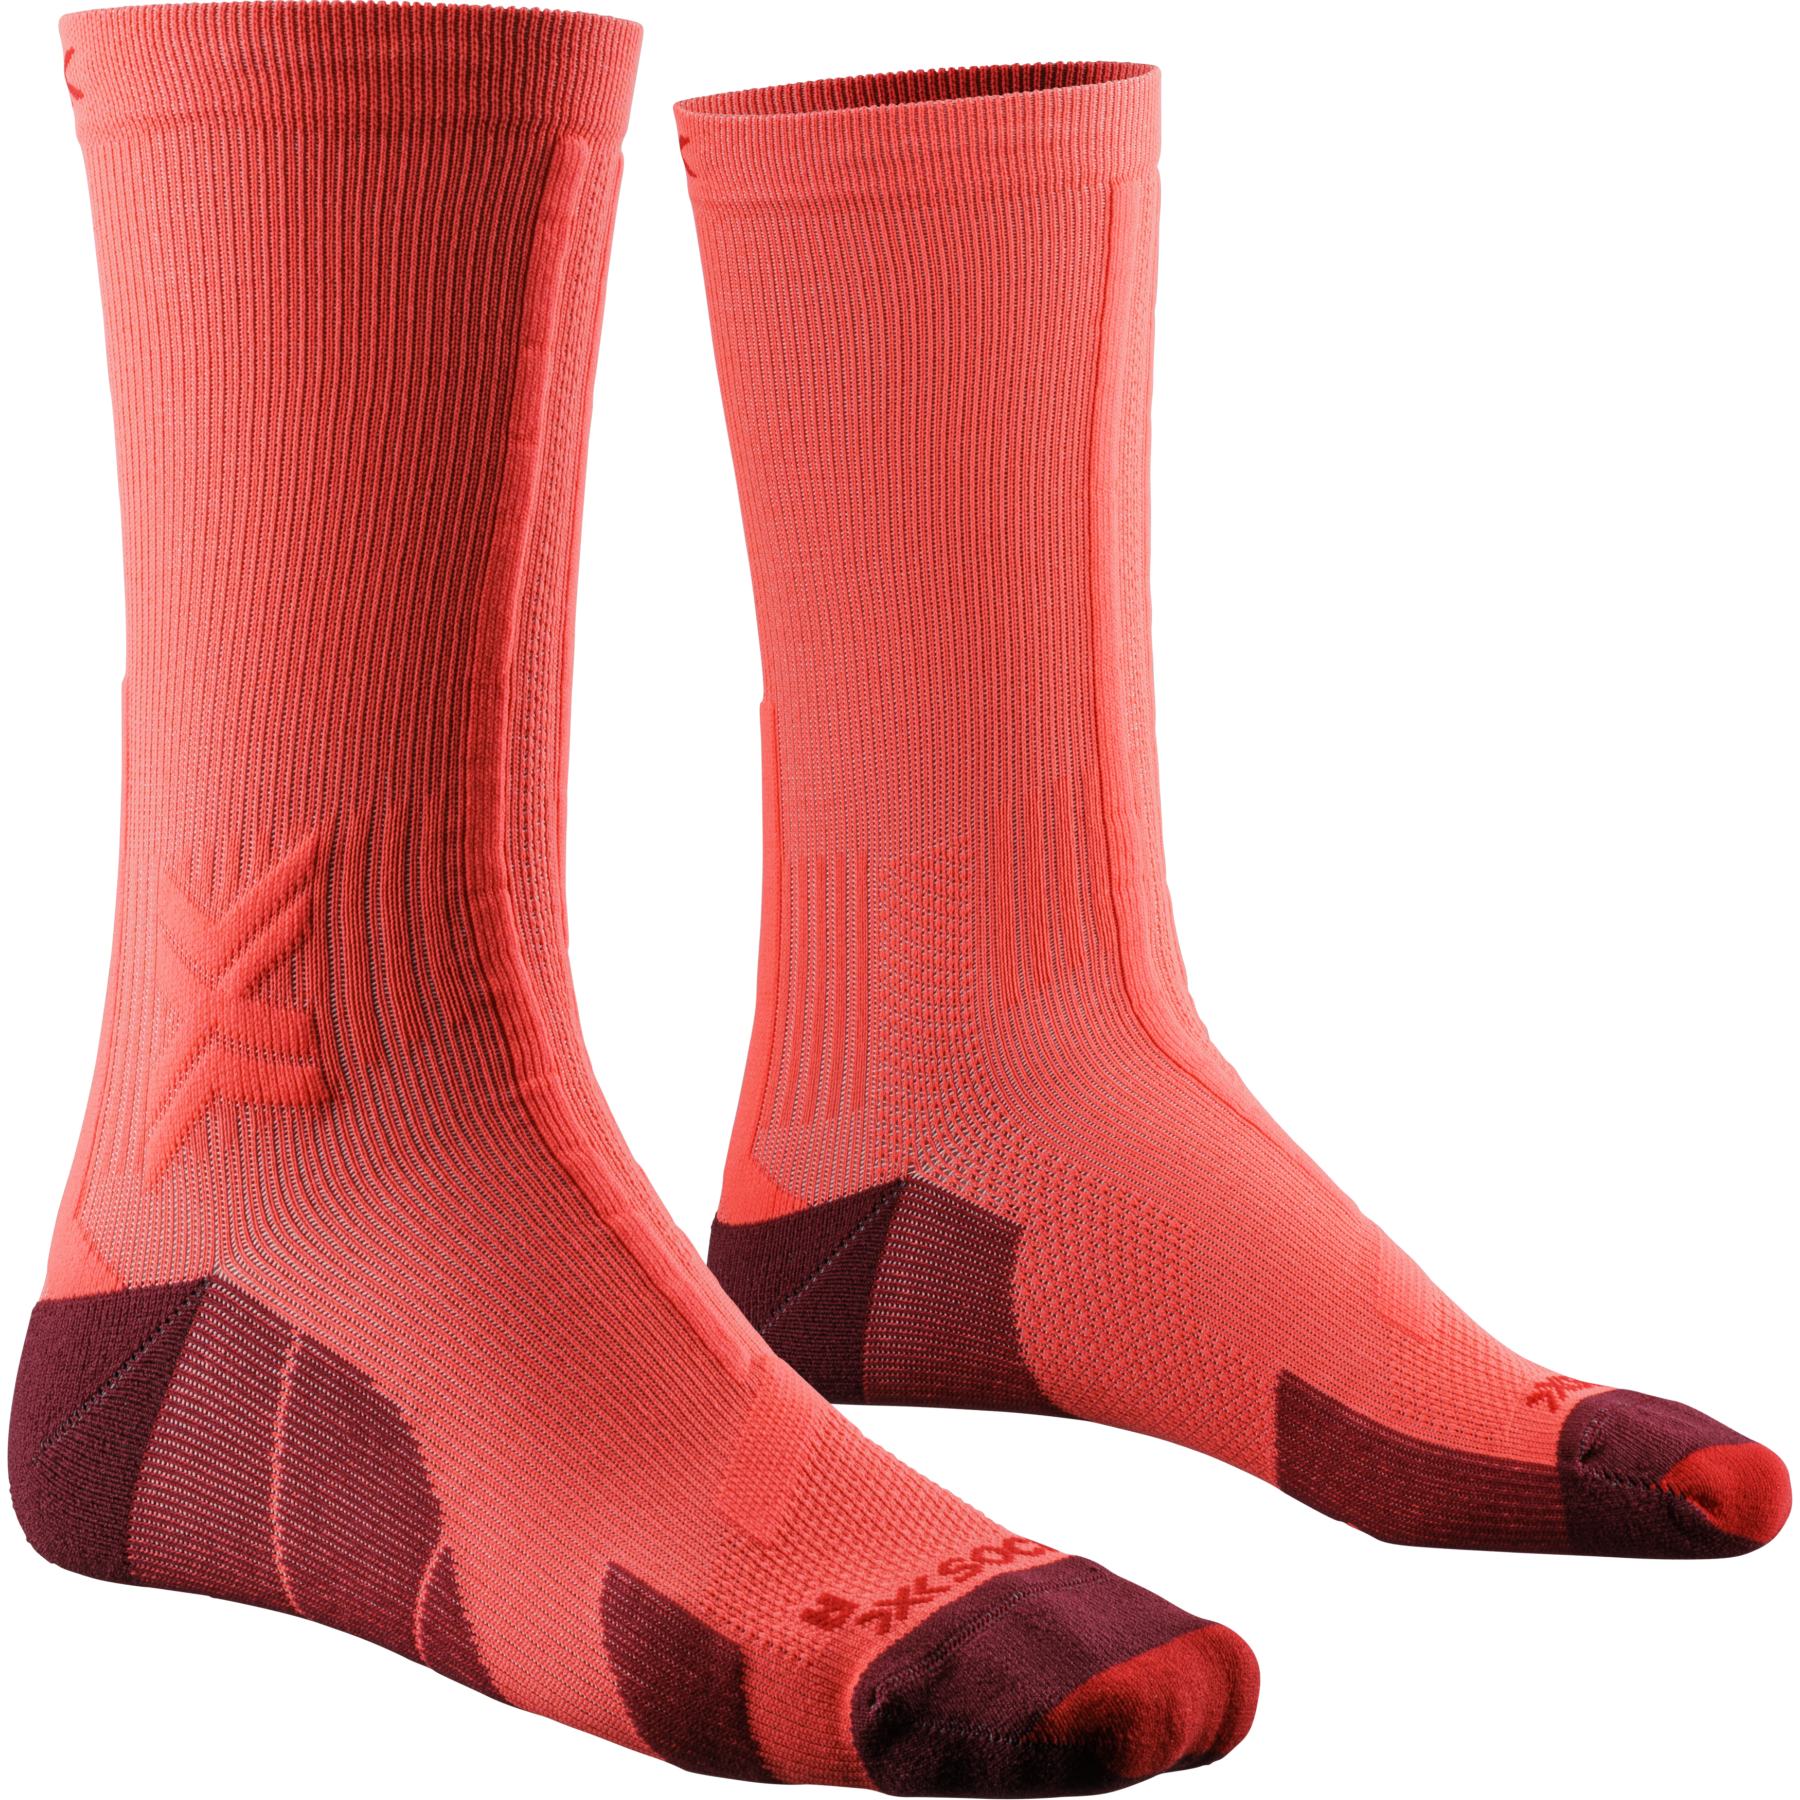 Produktbild von X-Socks Trail Run Discover Crew Socken - fluo red/namib red